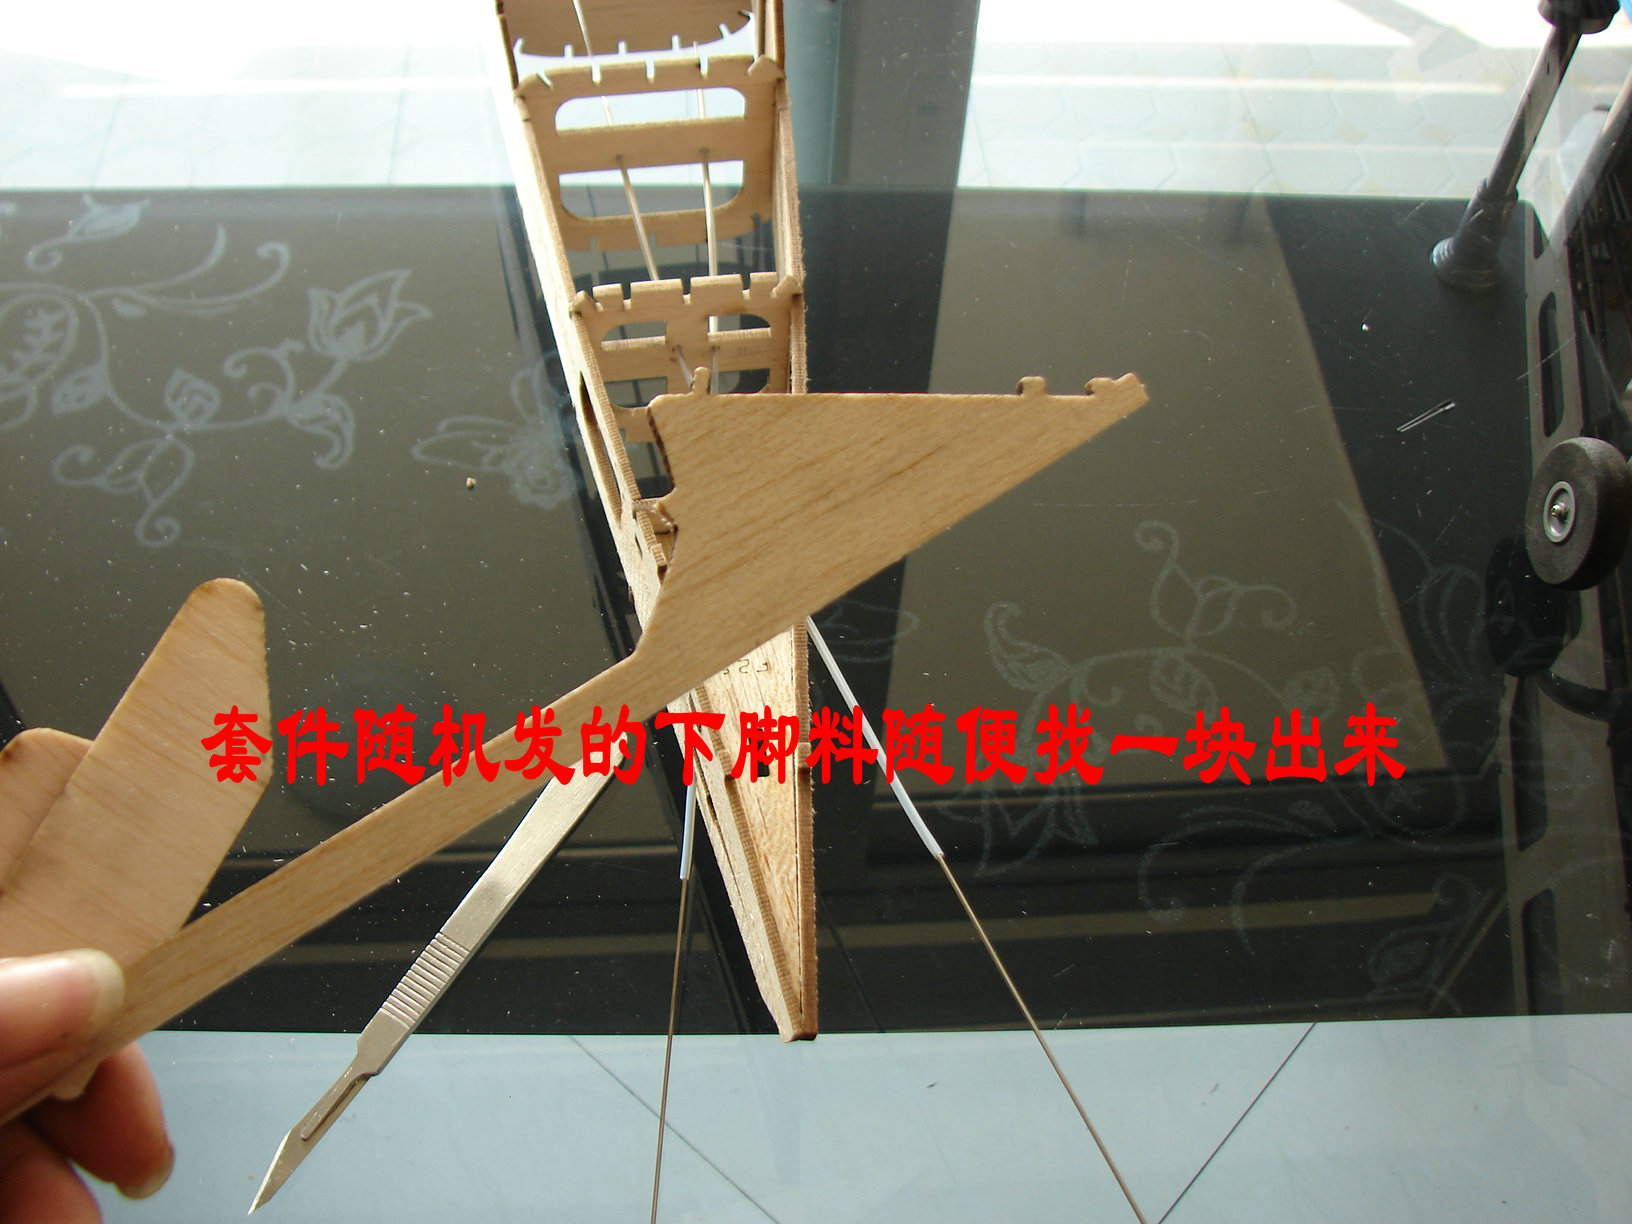 轻木塞斯纳182套材组装教程 给大家参考用图很多 塞斯纳,轻木,轻木哪里有卖 作者:wengchuankuo 2853 